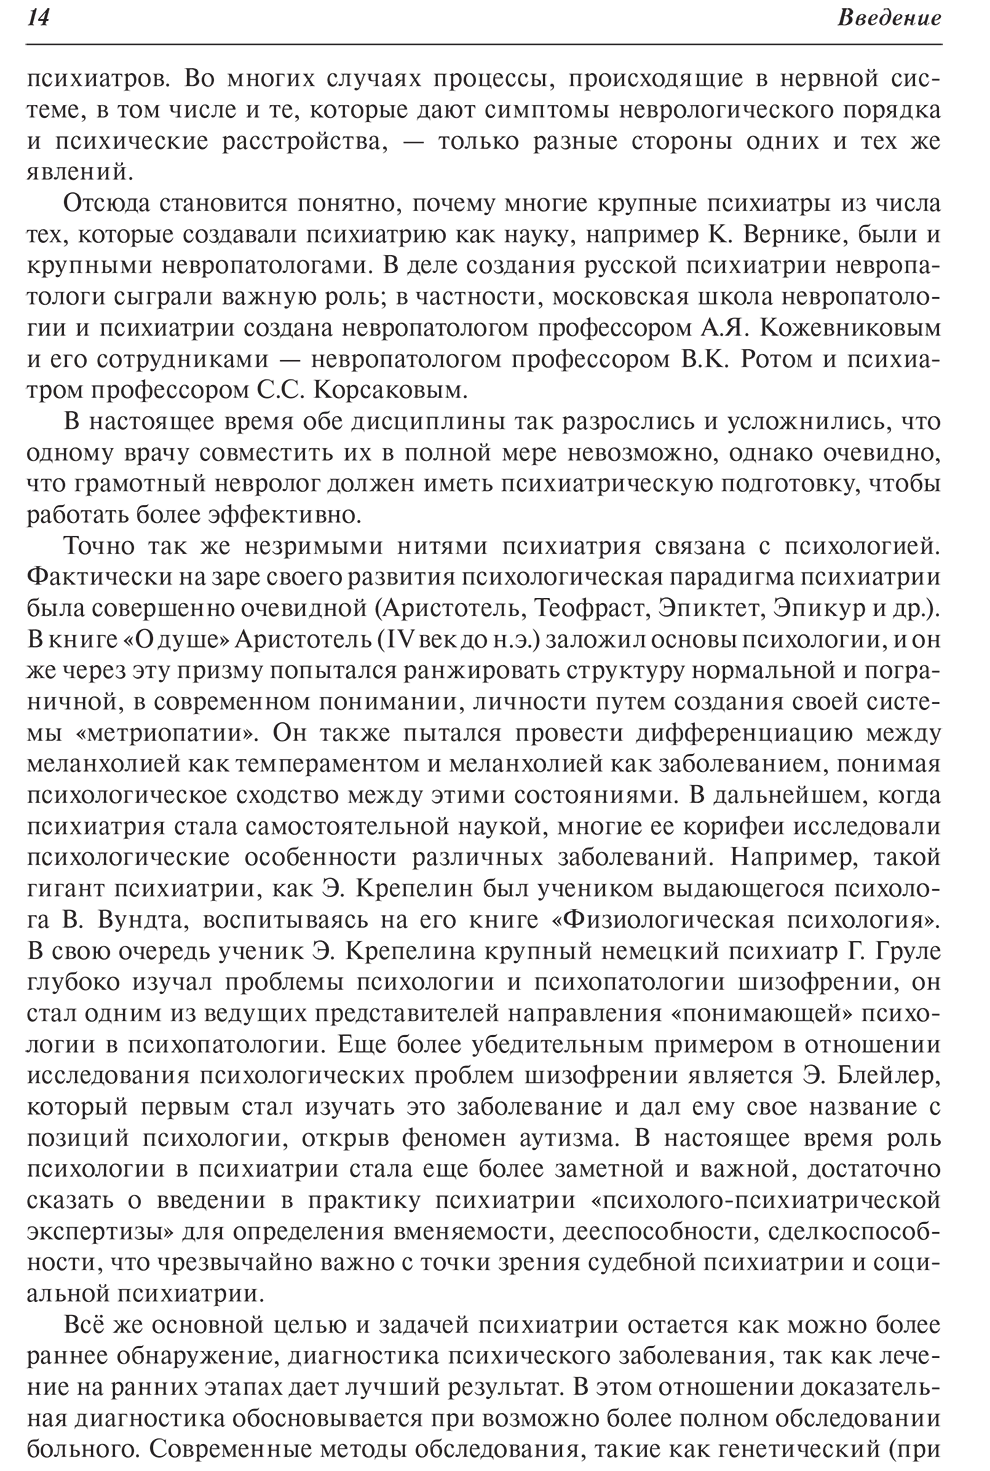 Пример страницы из книги "Психиатрия. Руководство" - Цыганков Б. Д., Овсянников С. А.